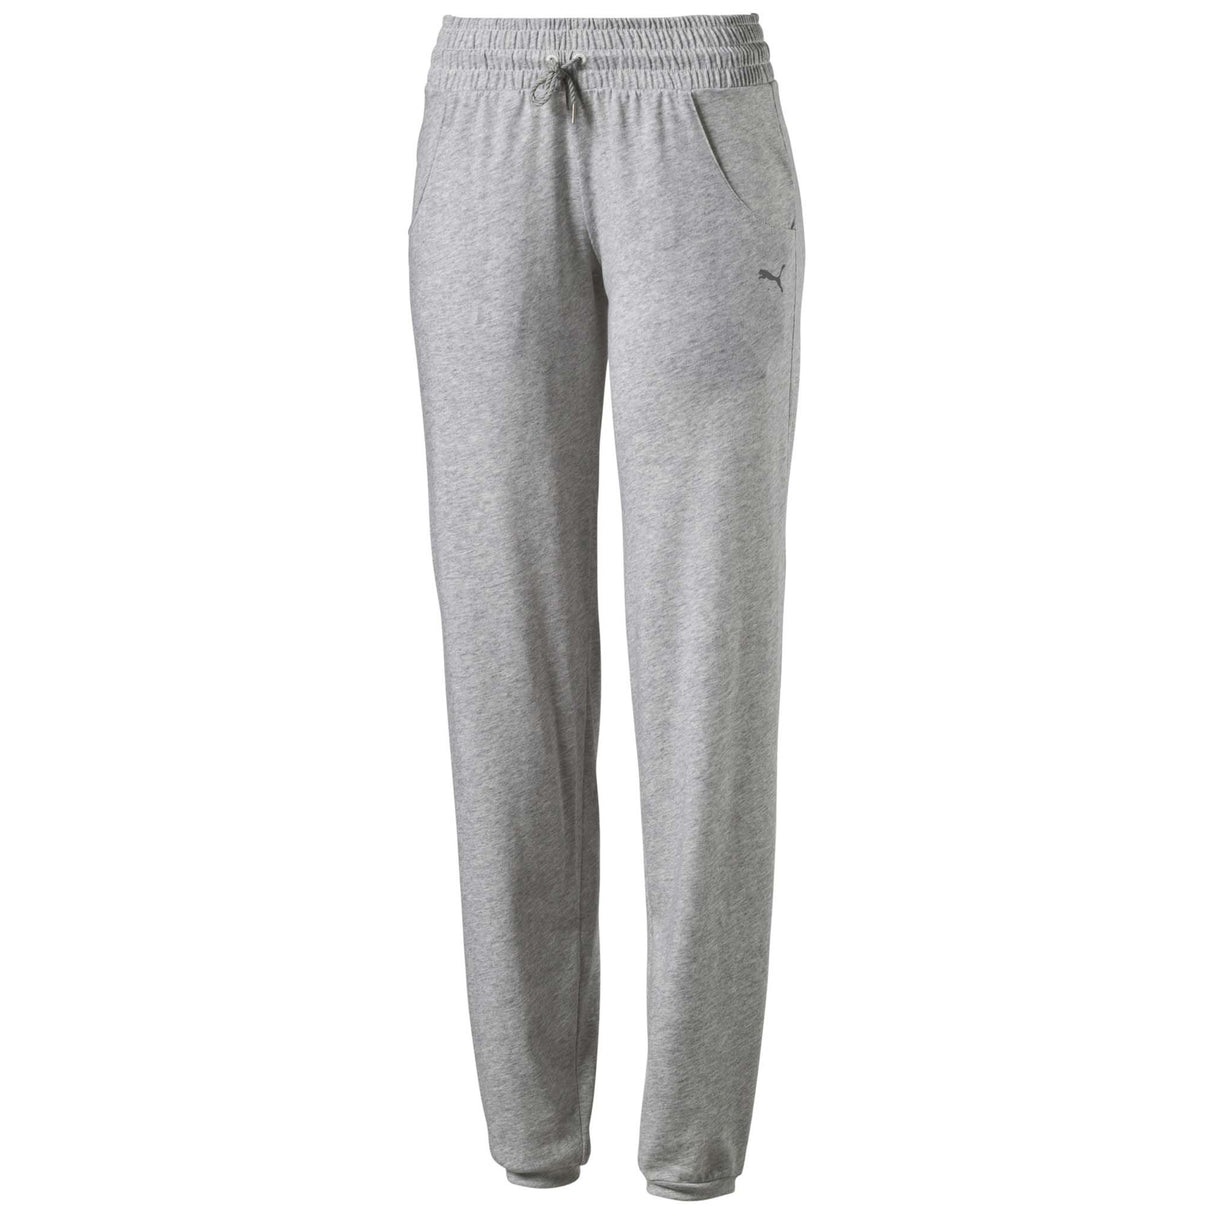 Puma Essential pantalon sport femme gris